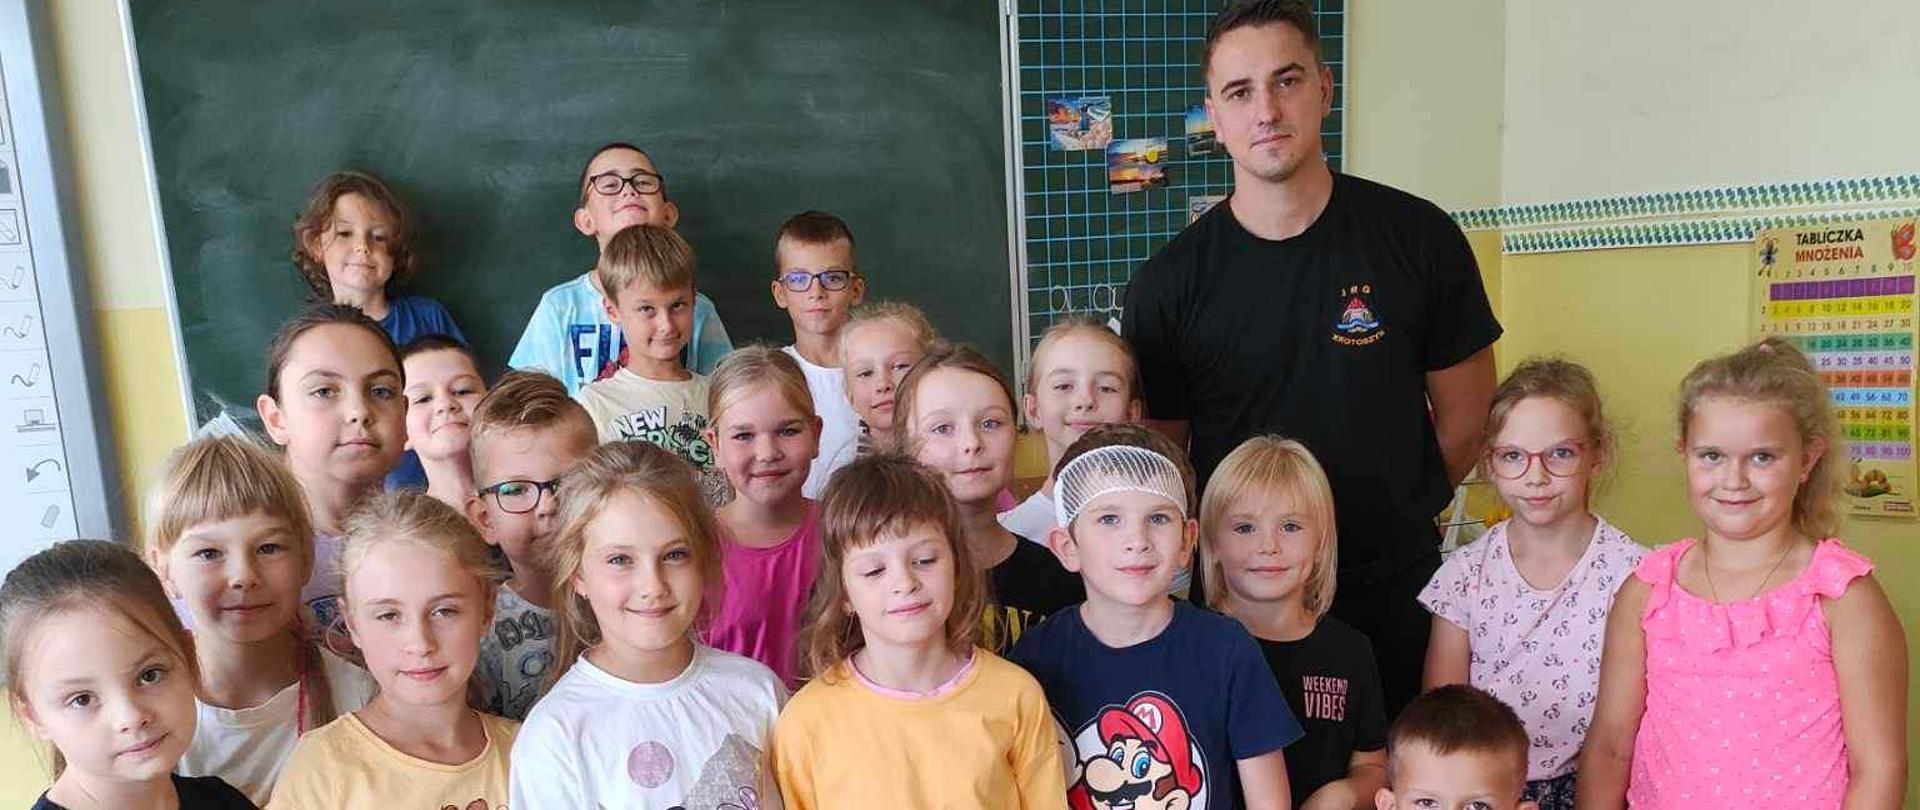 Zdjęcie przedstawia Strażaka i dzieci stojące przy nim pozując do wspólnego zdjęcia. Wszyscy stoją na tle tablicy szkolnej a przed nimi widoczny jest spakowany w niebieskie torby sprzęt szkoleniowy.